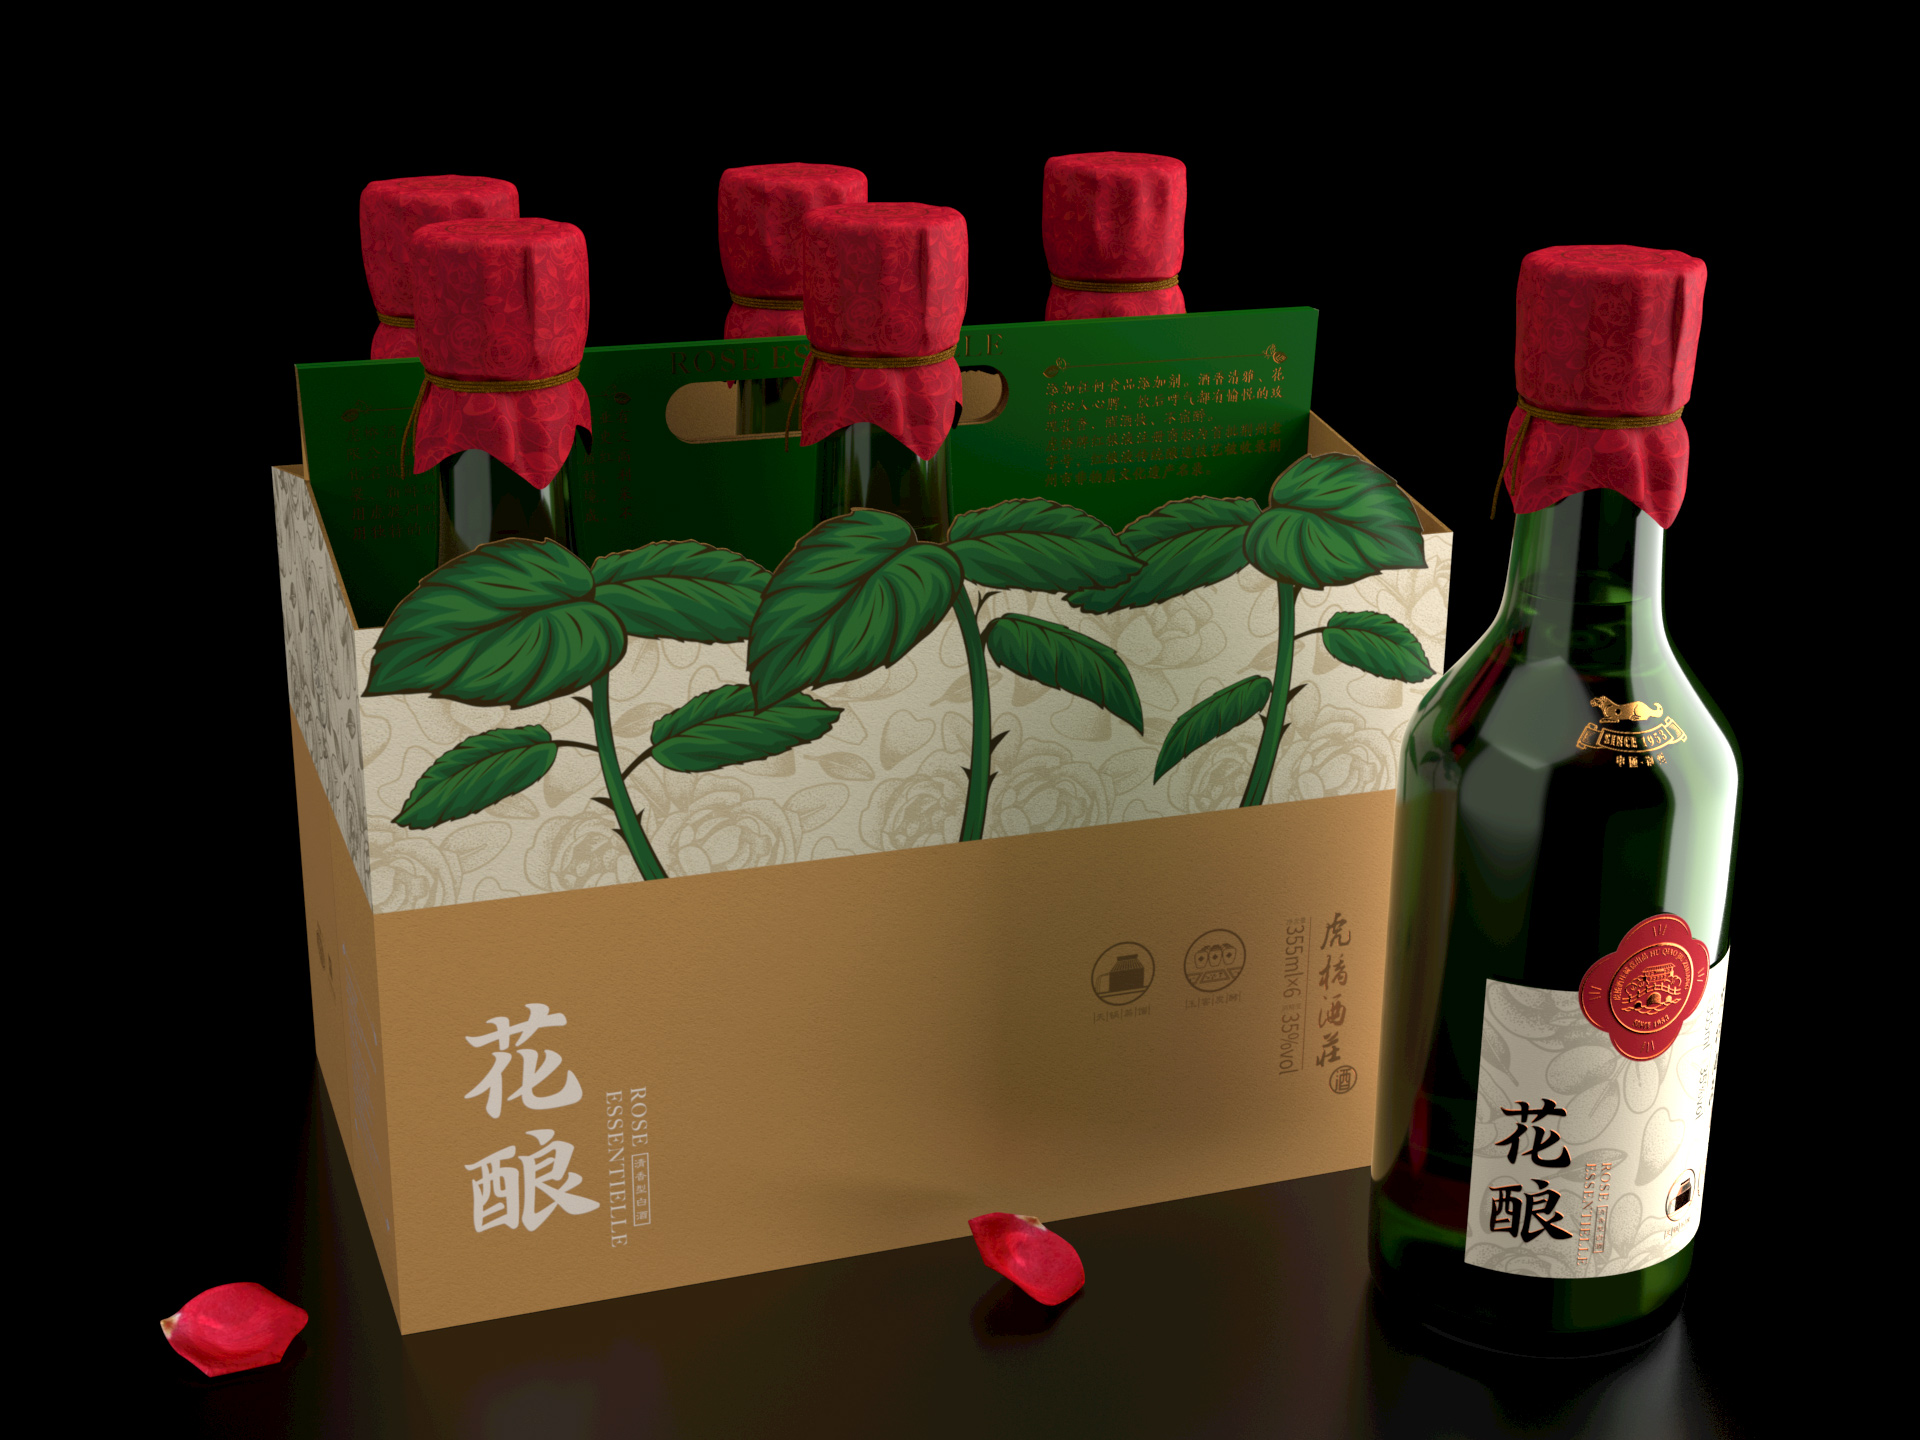 Packaging Design for Flower Brew Spirits